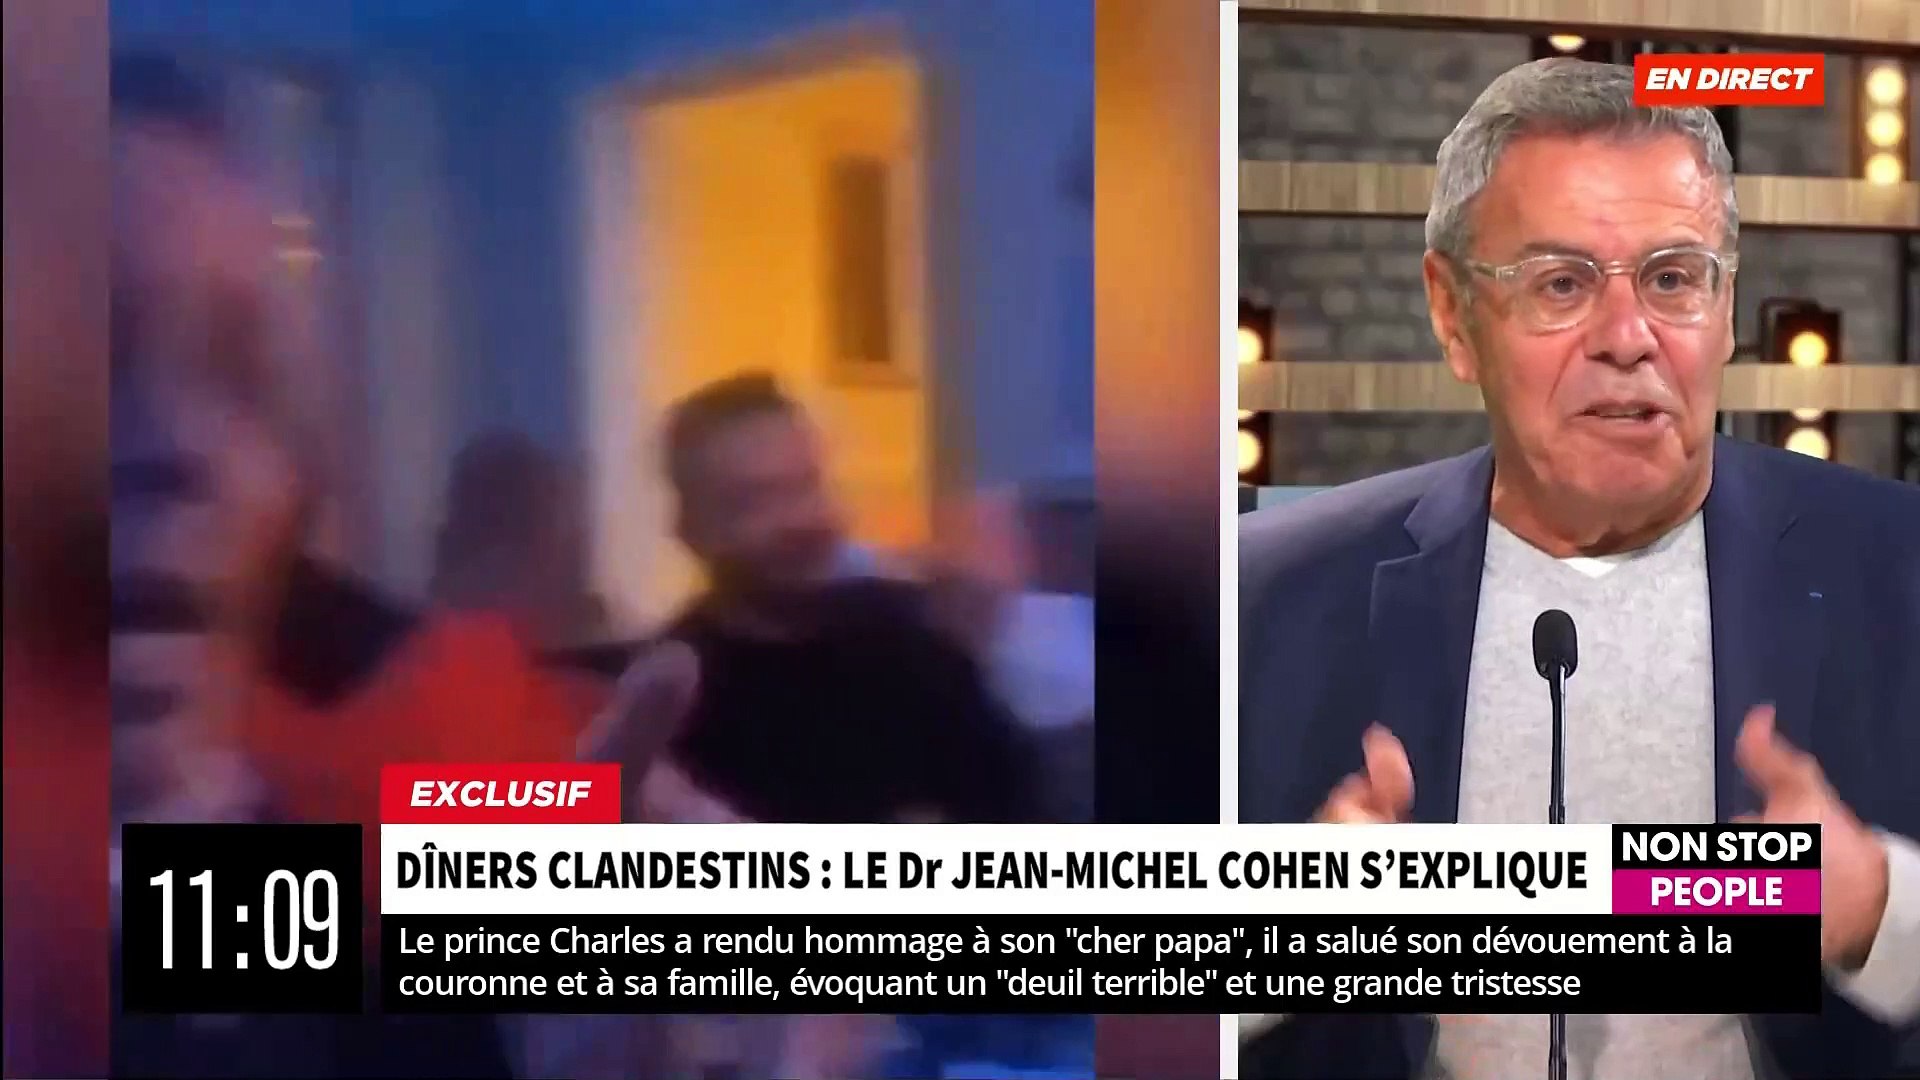 EXCLU - Dîners clandestins - Le Dr Jean-Michel Cohen répond aux  accusations: "Je n'ai jamais été dans un restaurant clandestin" - VIDEO -  Vidéo Dailymotion